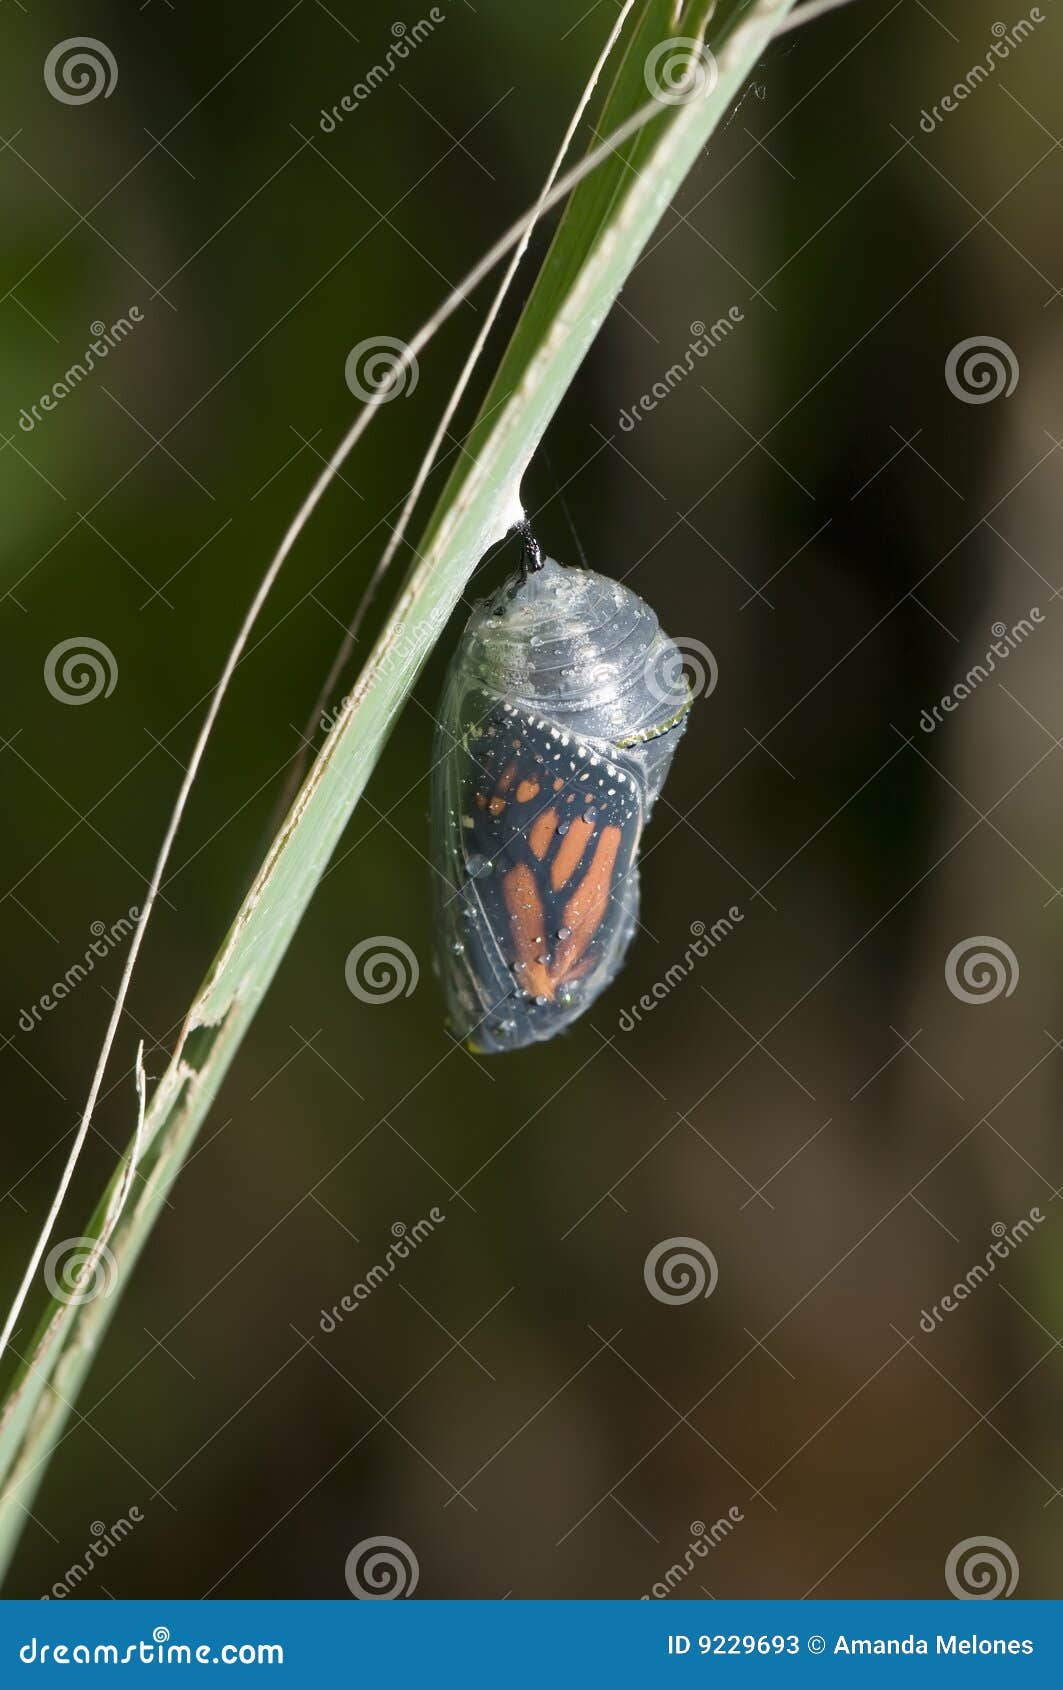 monarch cocoon